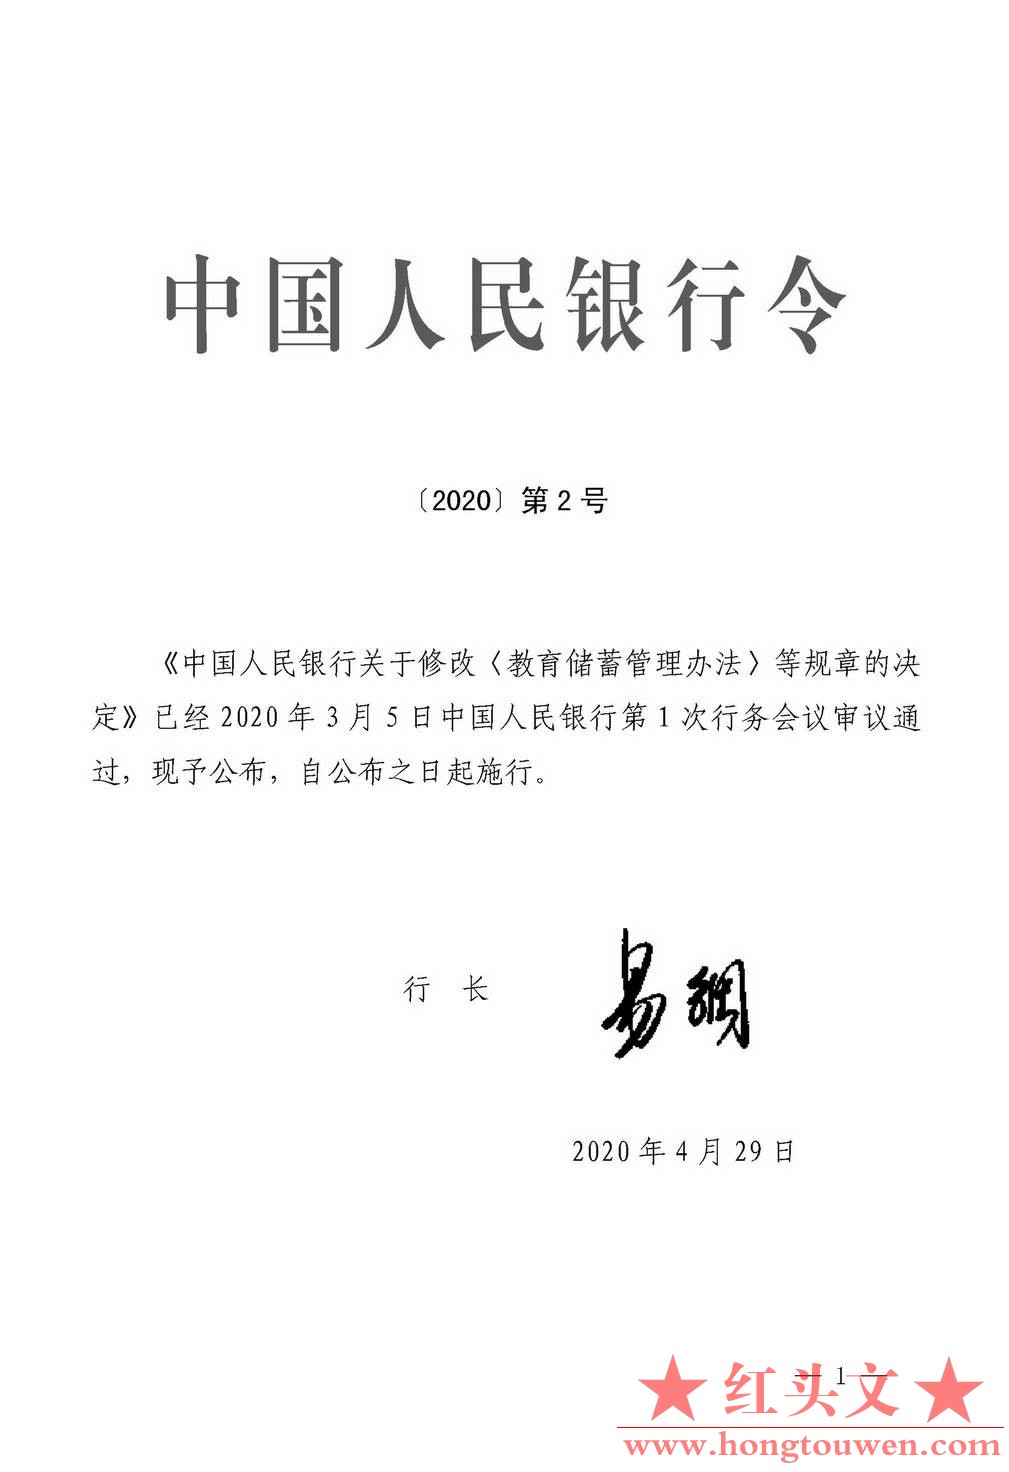 中国人民银行令[2020]第2号-关于修改《教育储蓄管理办法》等规章的决定_页面_1_图像_0.jpg